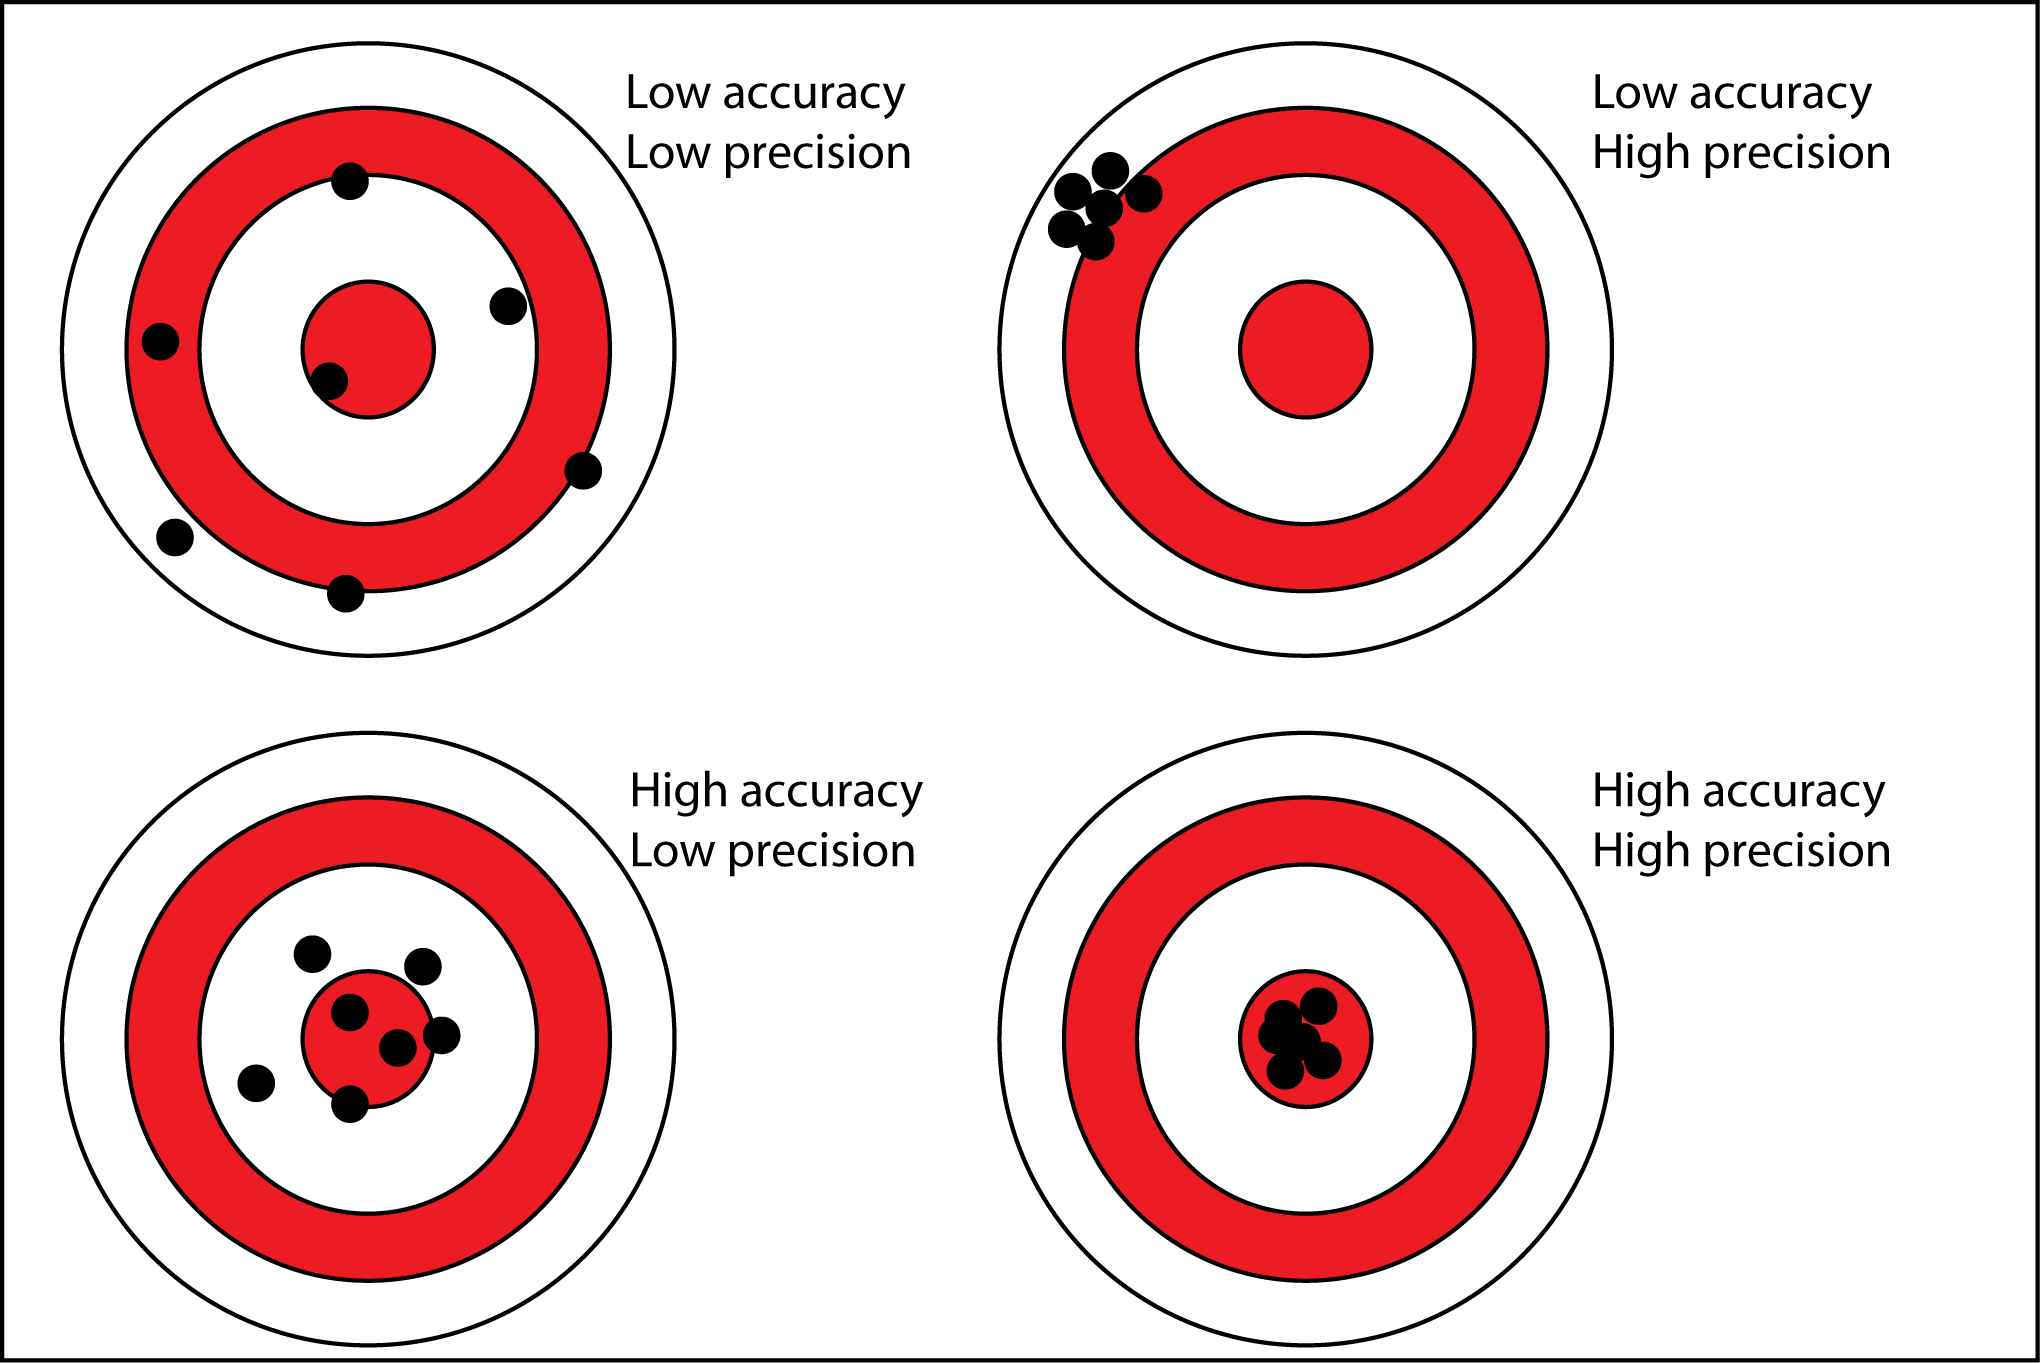 "Precision vs Accuracy"